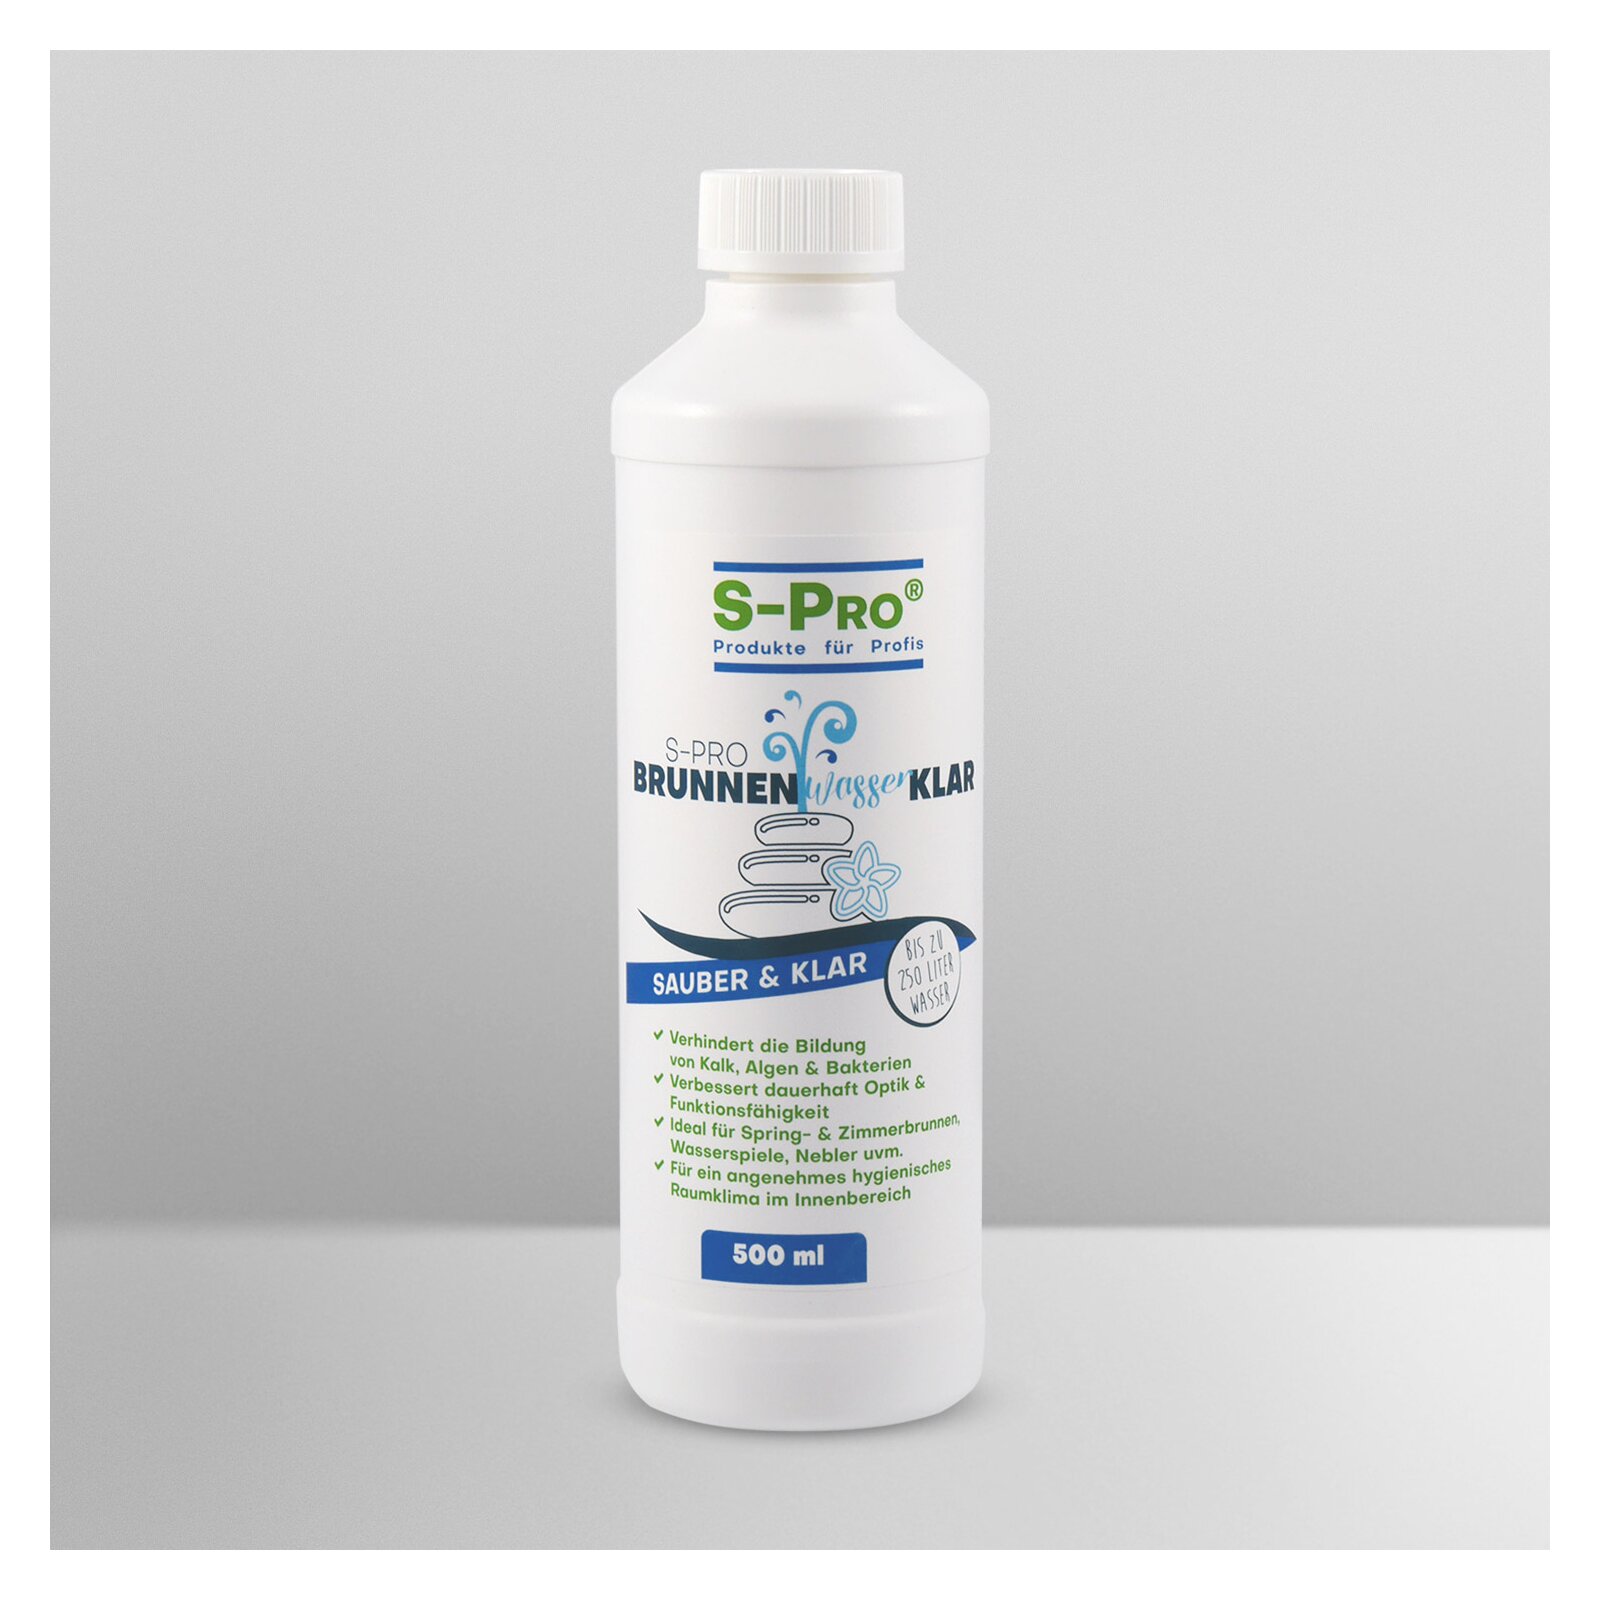 S-Pro® BrunnenwasserKlar von S-Pro